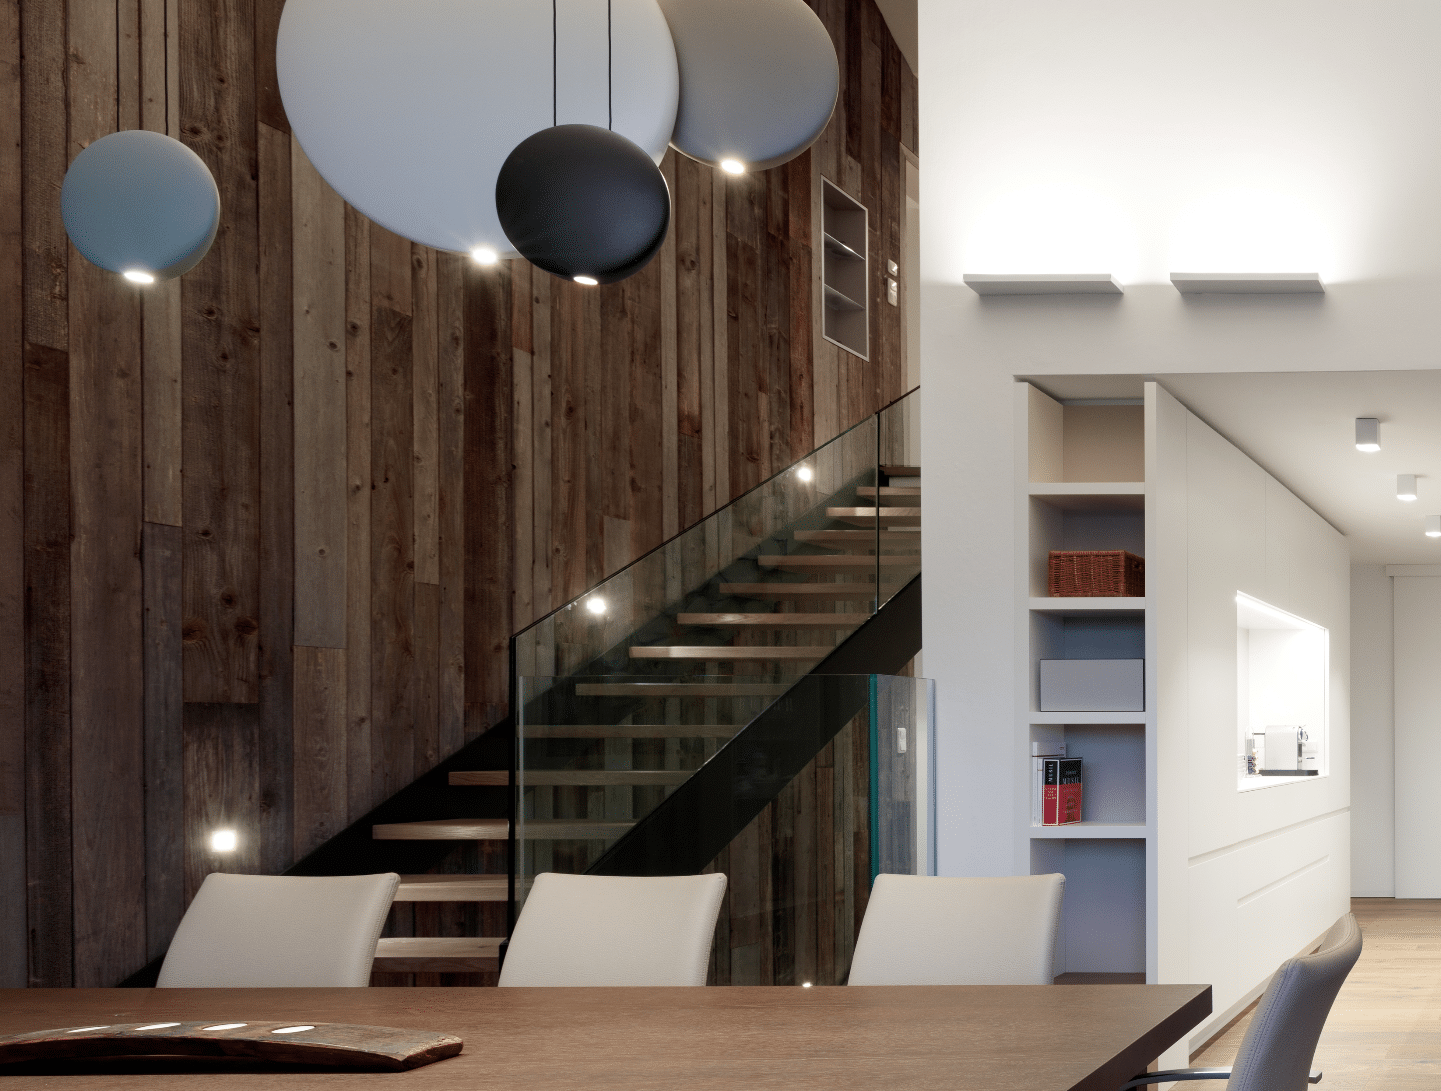 Hausjell zeigt einen Wohnbereich mit Holztisch und hellen Stühlen mit einer dunklen Treppe mit Beleuchtung und Glasgeländer.